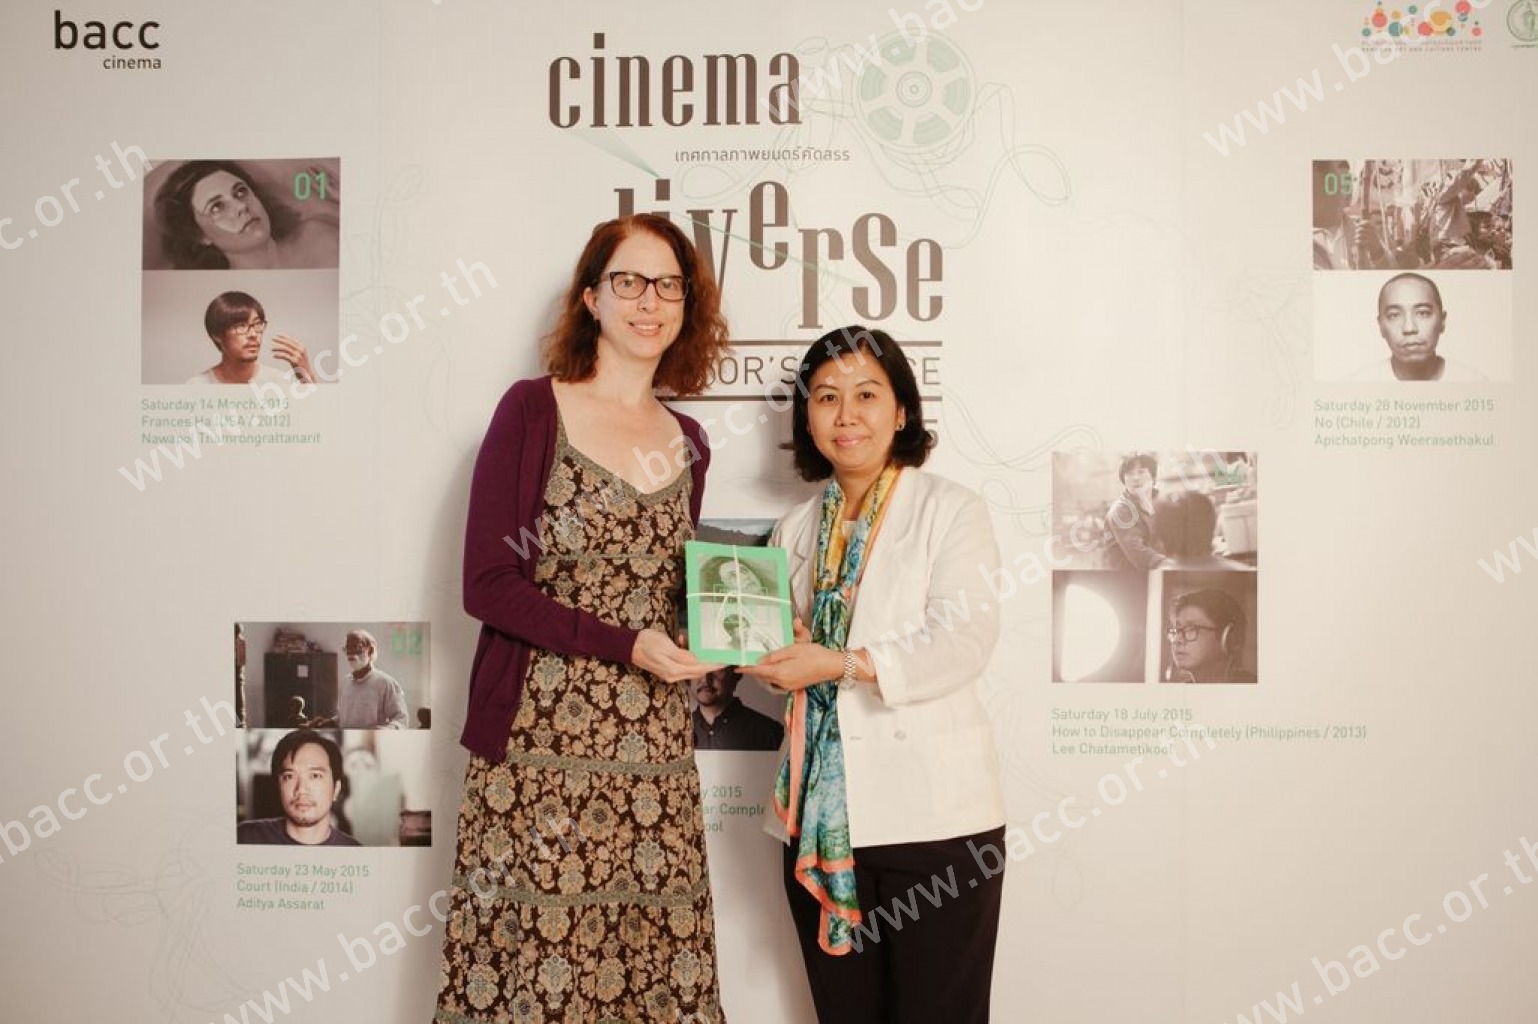 เทศกาลภาพยนตร์คัดสรร CINEMA DIVERSE 2015 : DIRECTOR’S CHOICE - Frances Ha (2012)